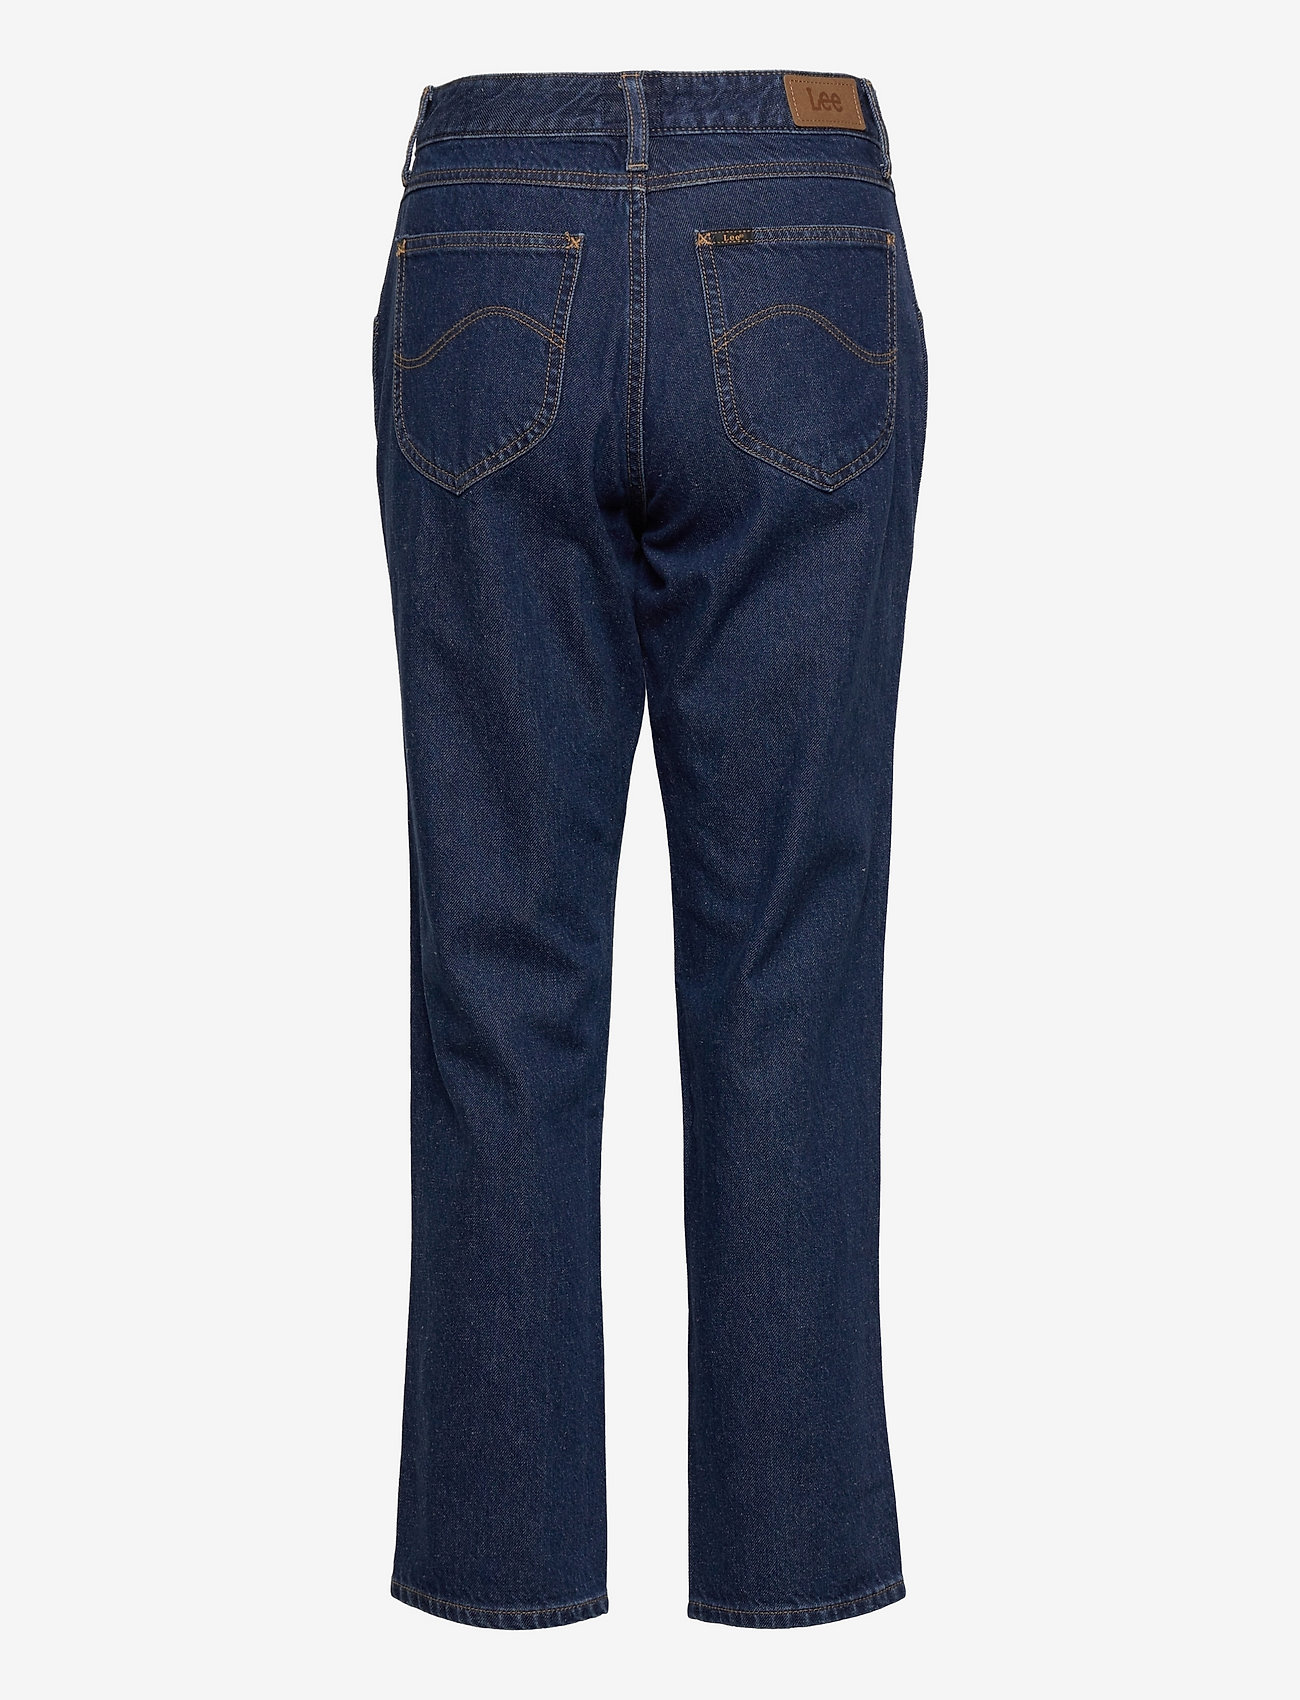 Lee Jeans - CAROL PLEATED - raka jeans - rinse - 1